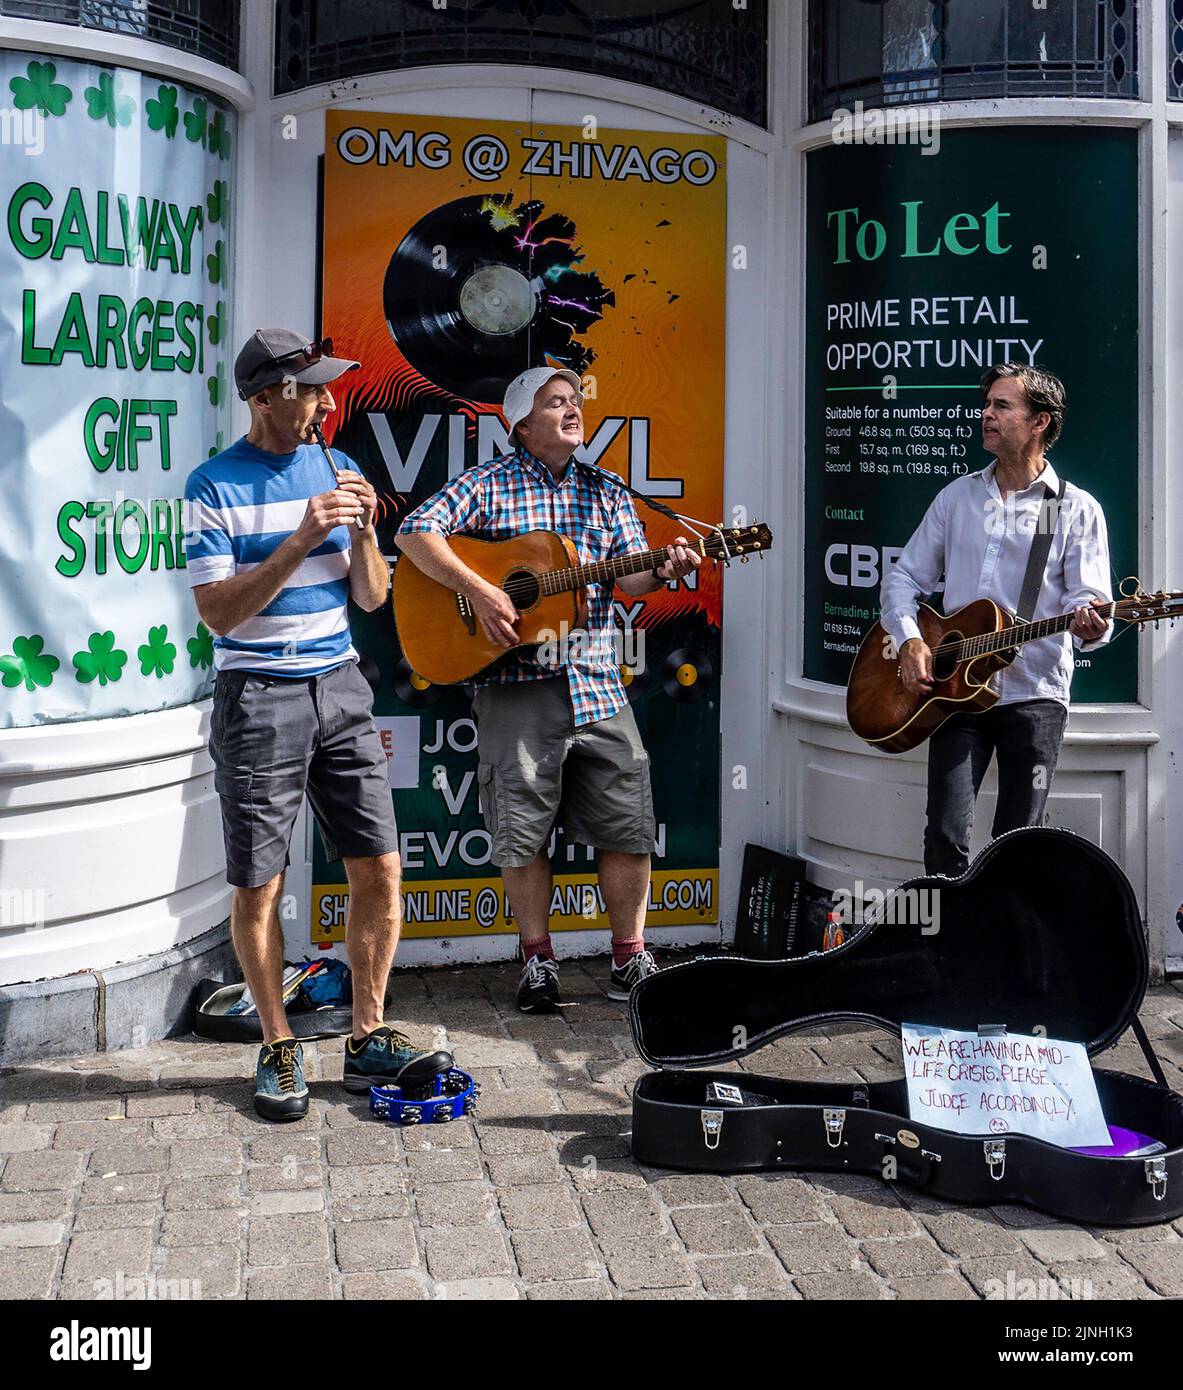 Un gruppo di uomini che bussano su Shop Street, Galway, Irlanda, il loro segno dice che stanno avendo una crisi di metà vita! Foto Stock